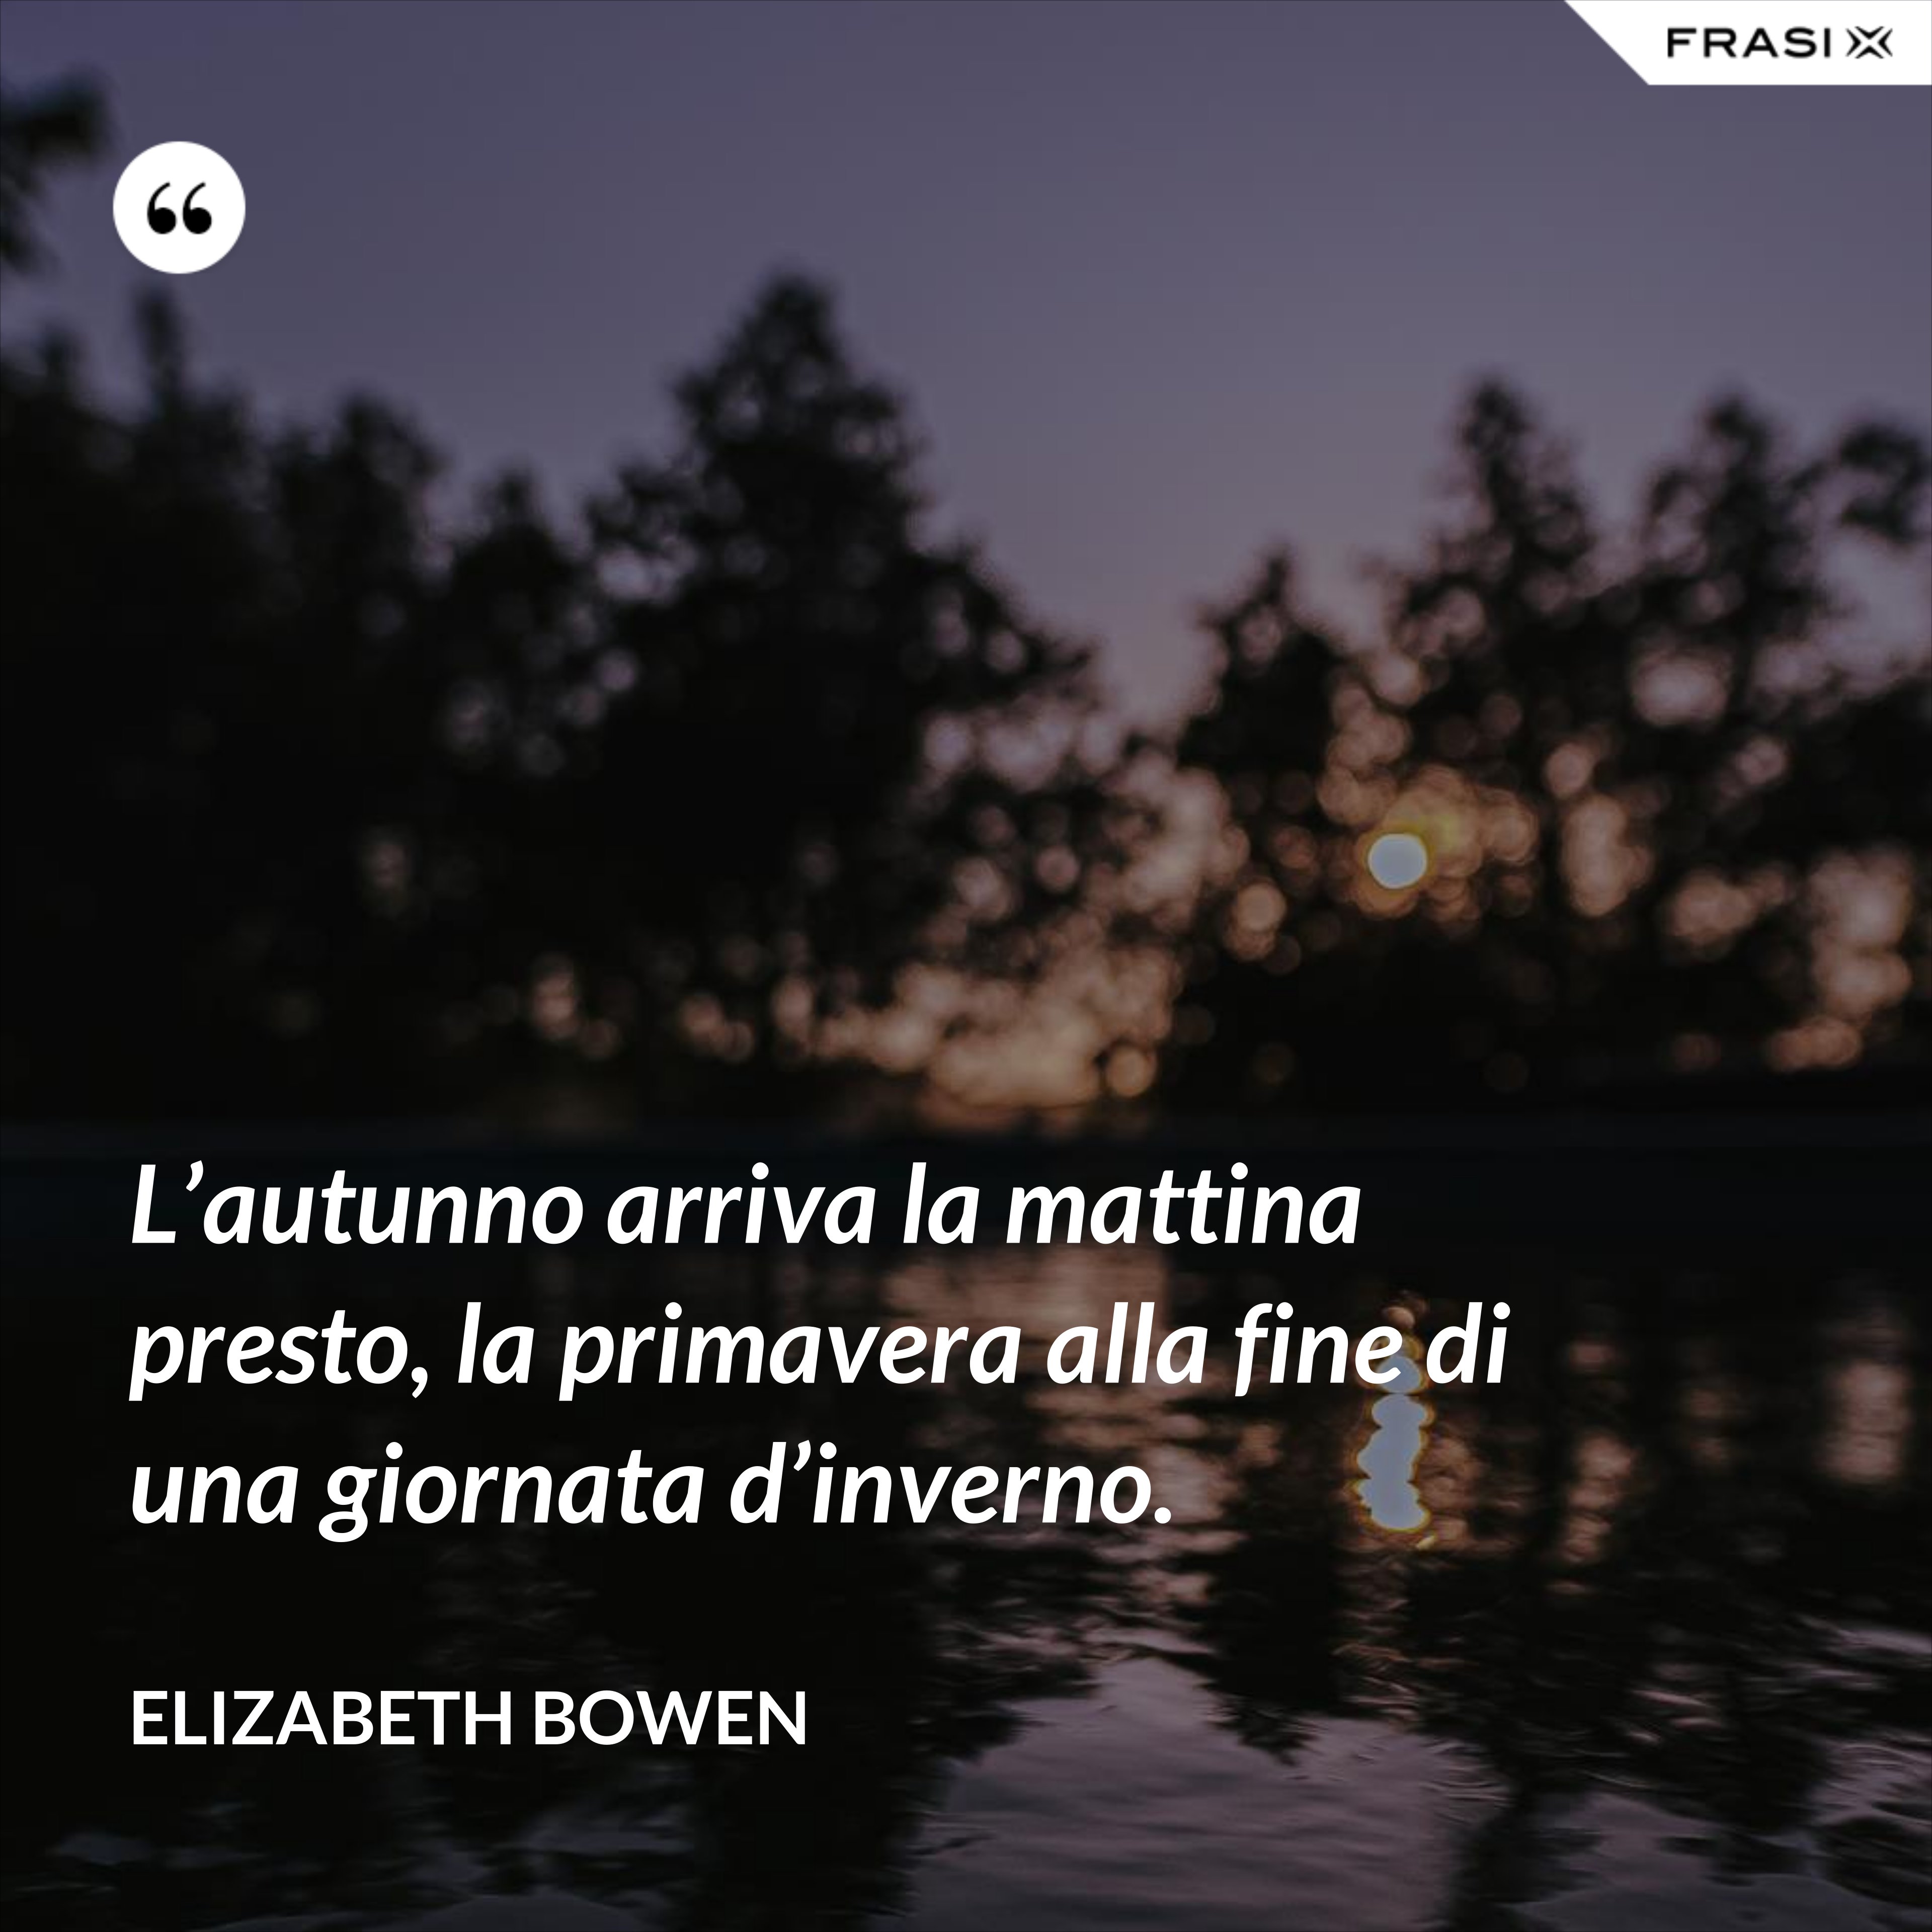 L’autunno arriva la mattina presto, la primavera alla fine di una giornata d’inverno. - Elizabeth Bowen